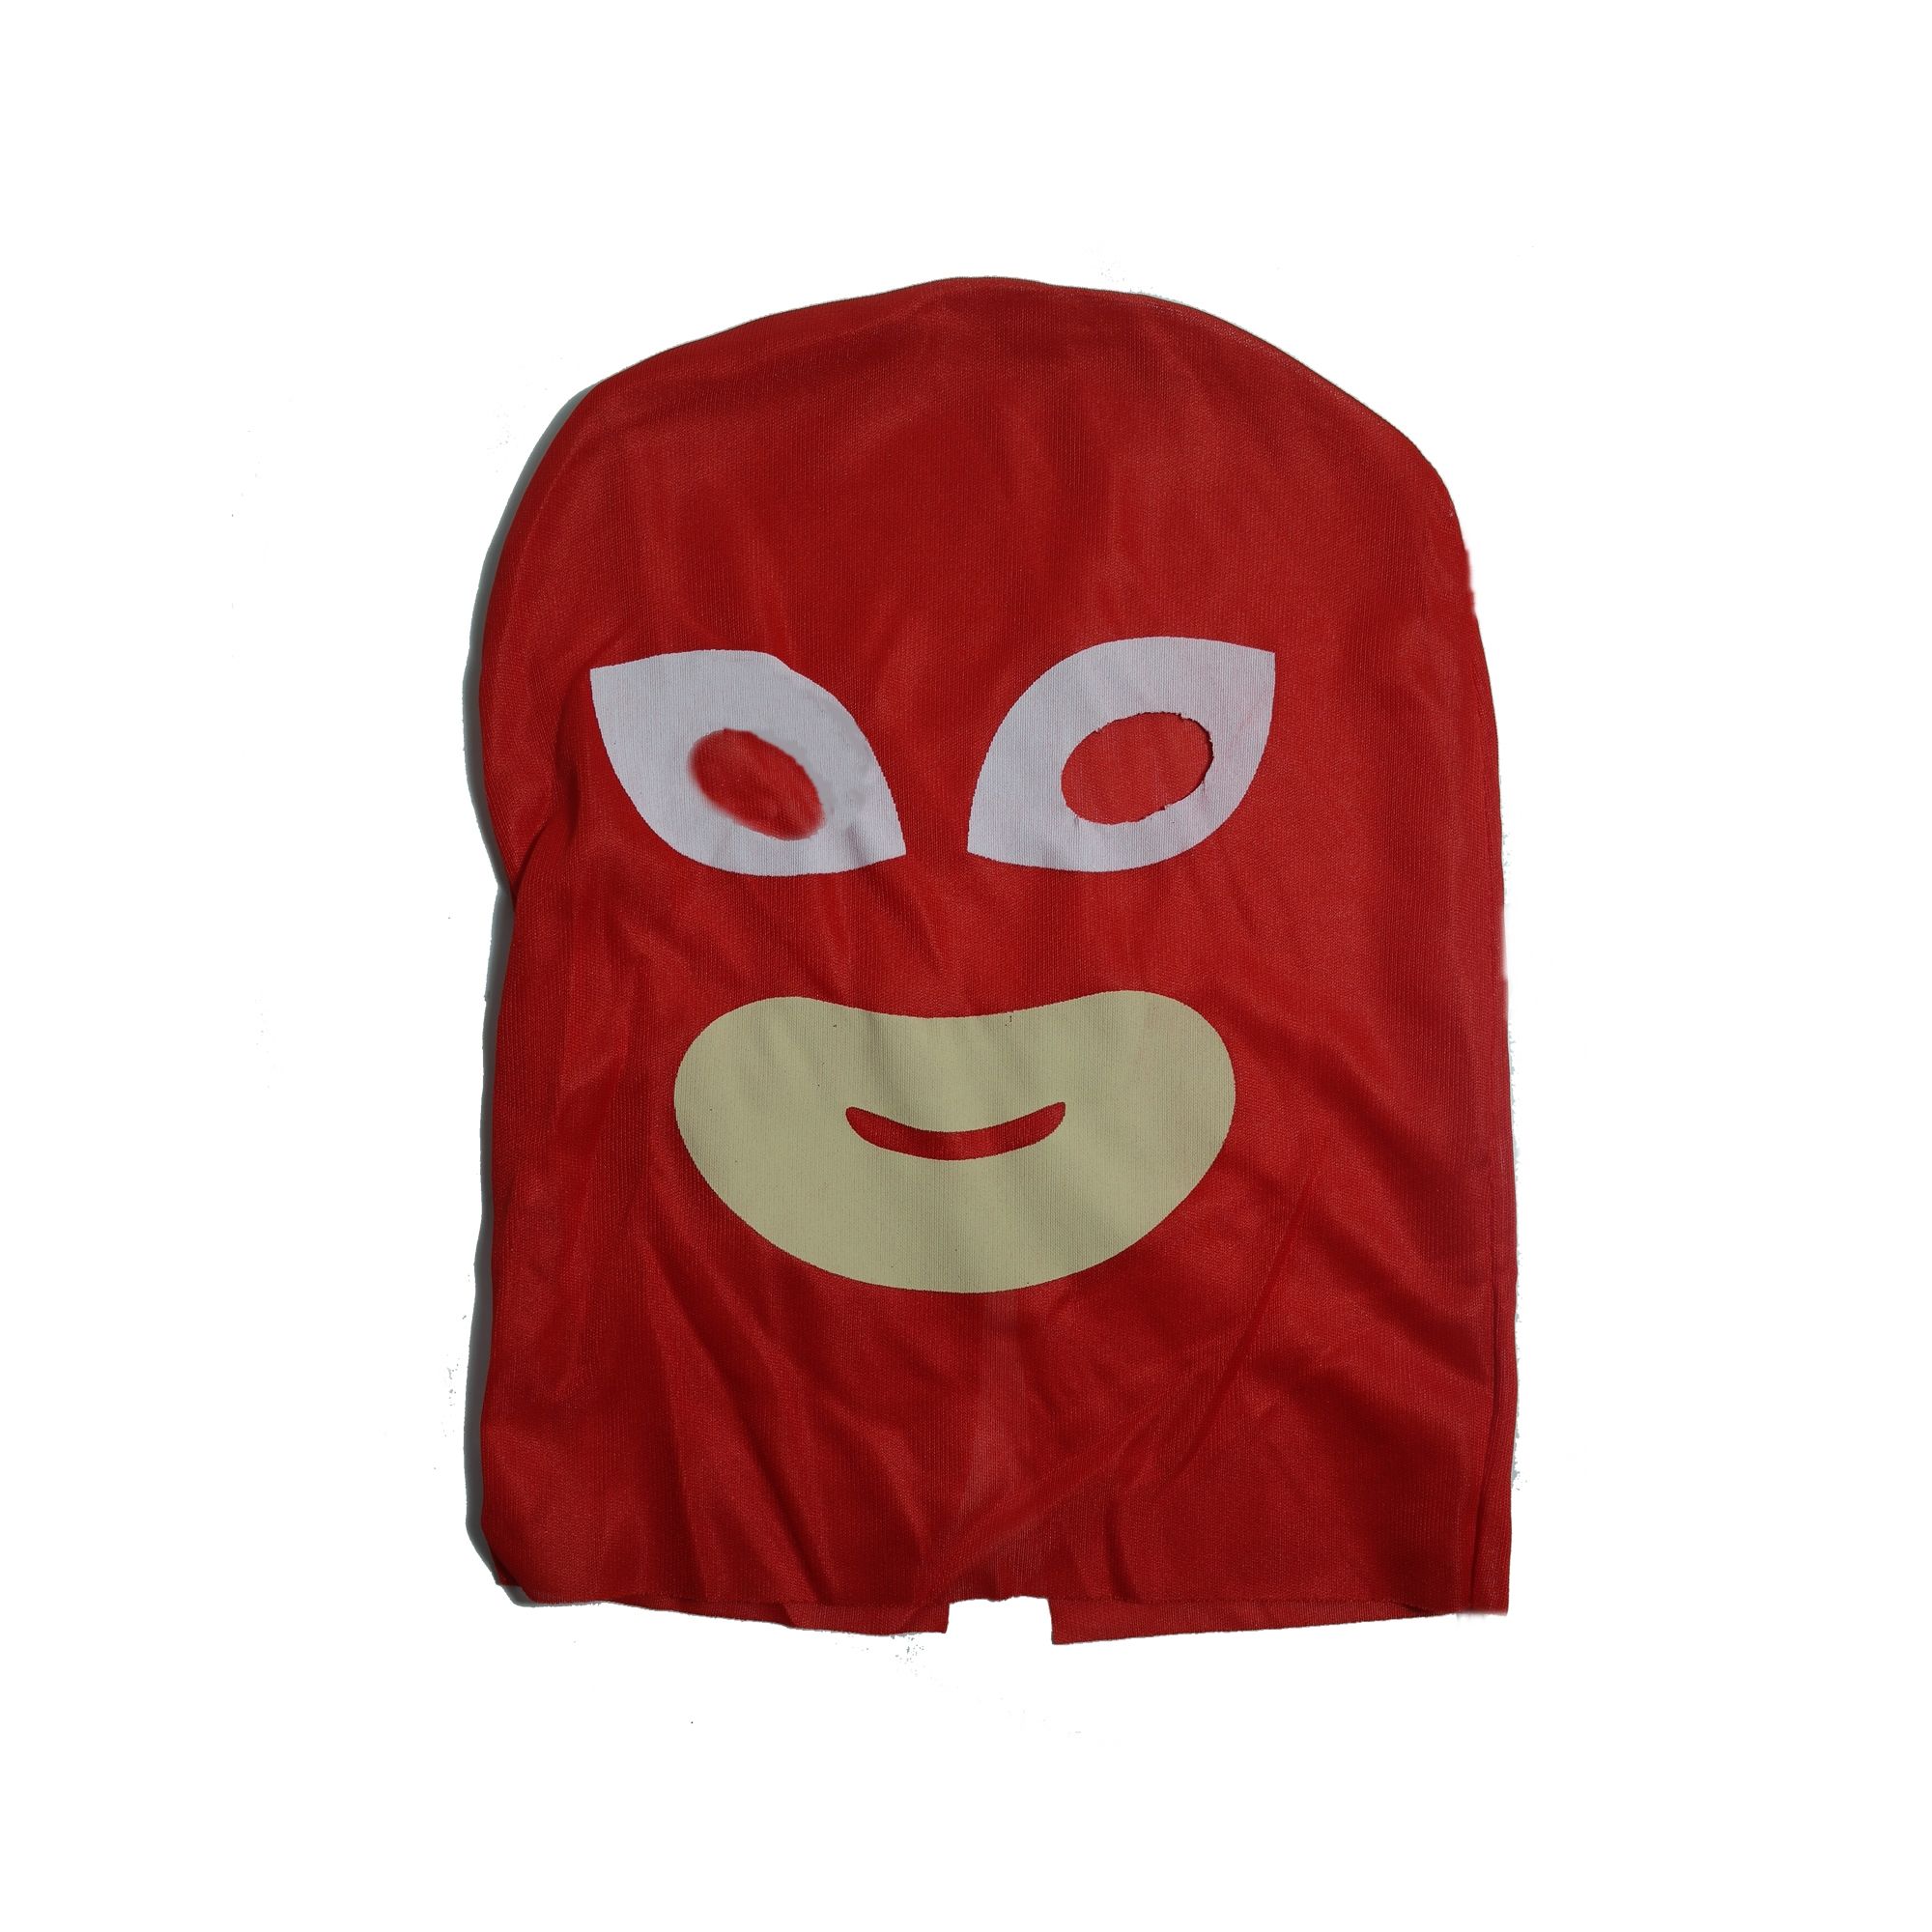 Costum pentru copii Red Owl, marimea 5-7 ani, 110-120, jucarie inclusa